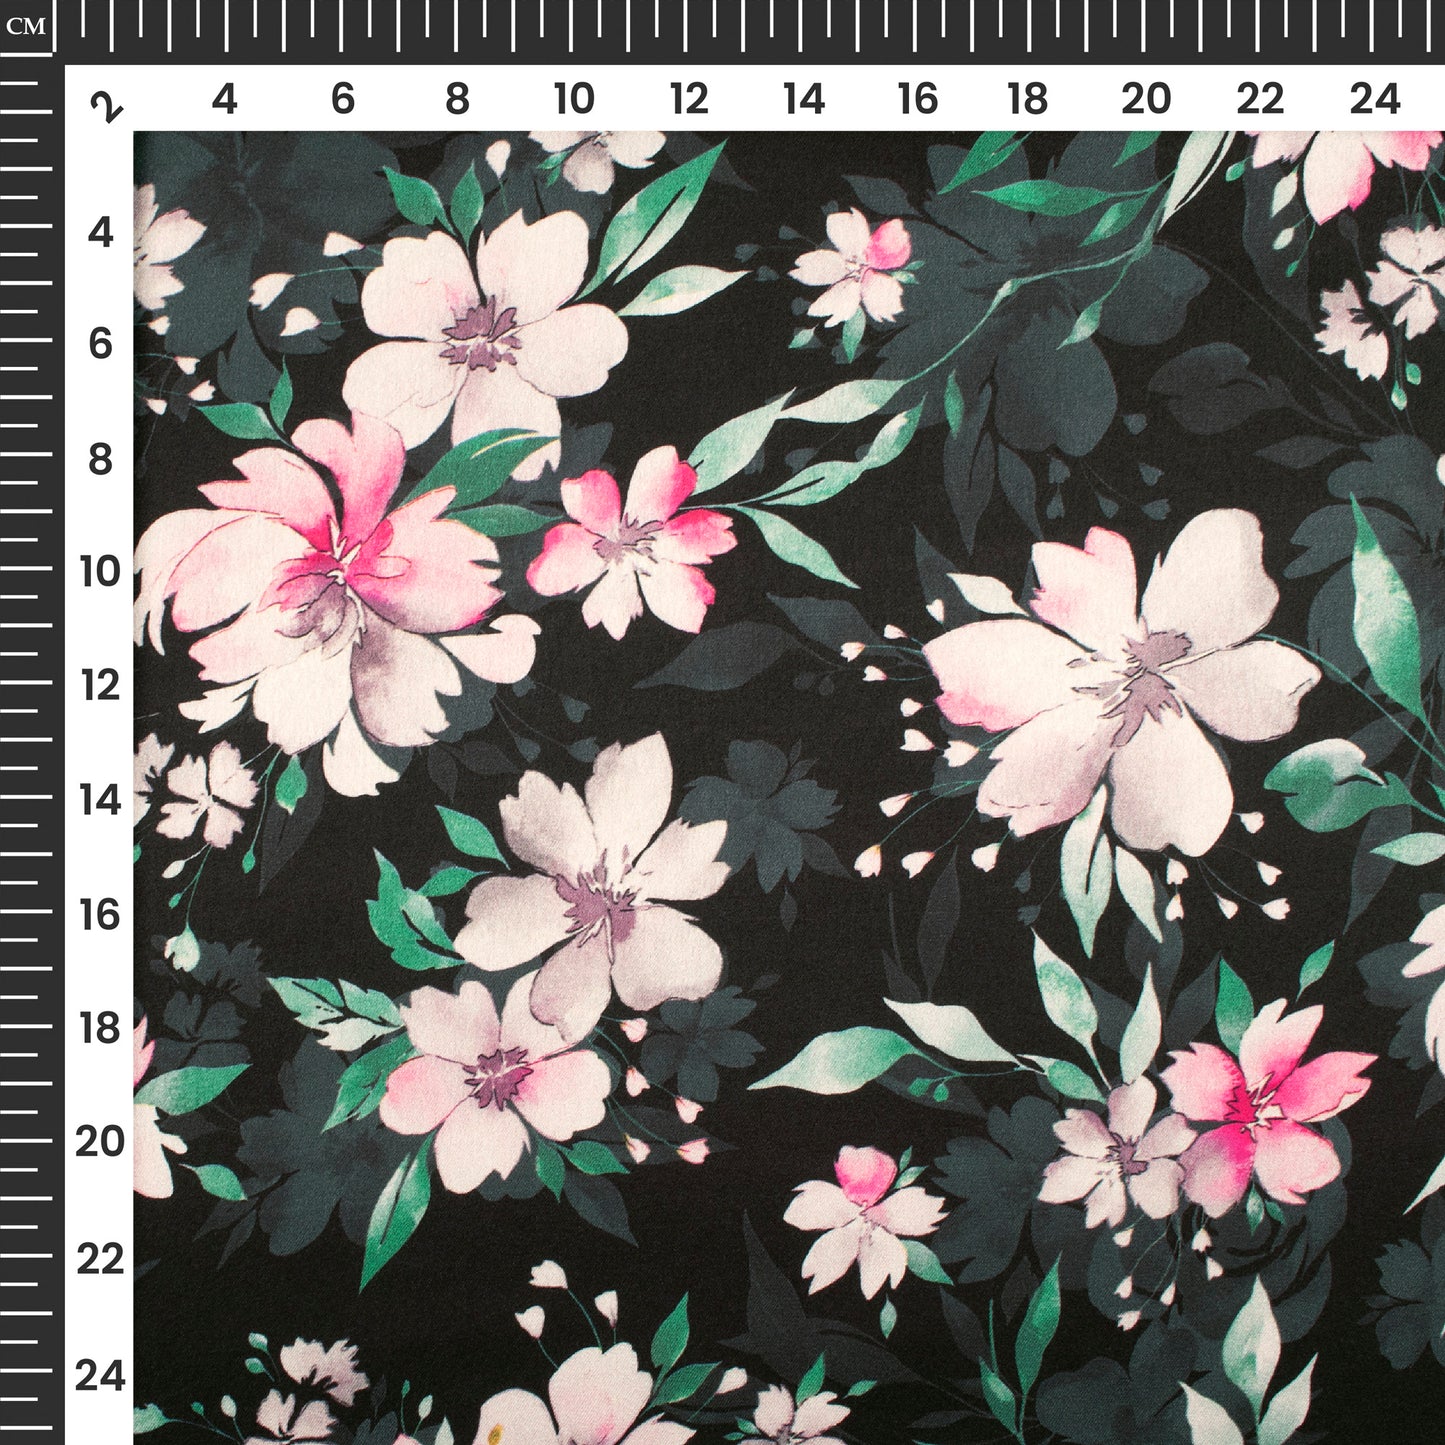 Exotic Floral Digital Print Japan Satin Fabric